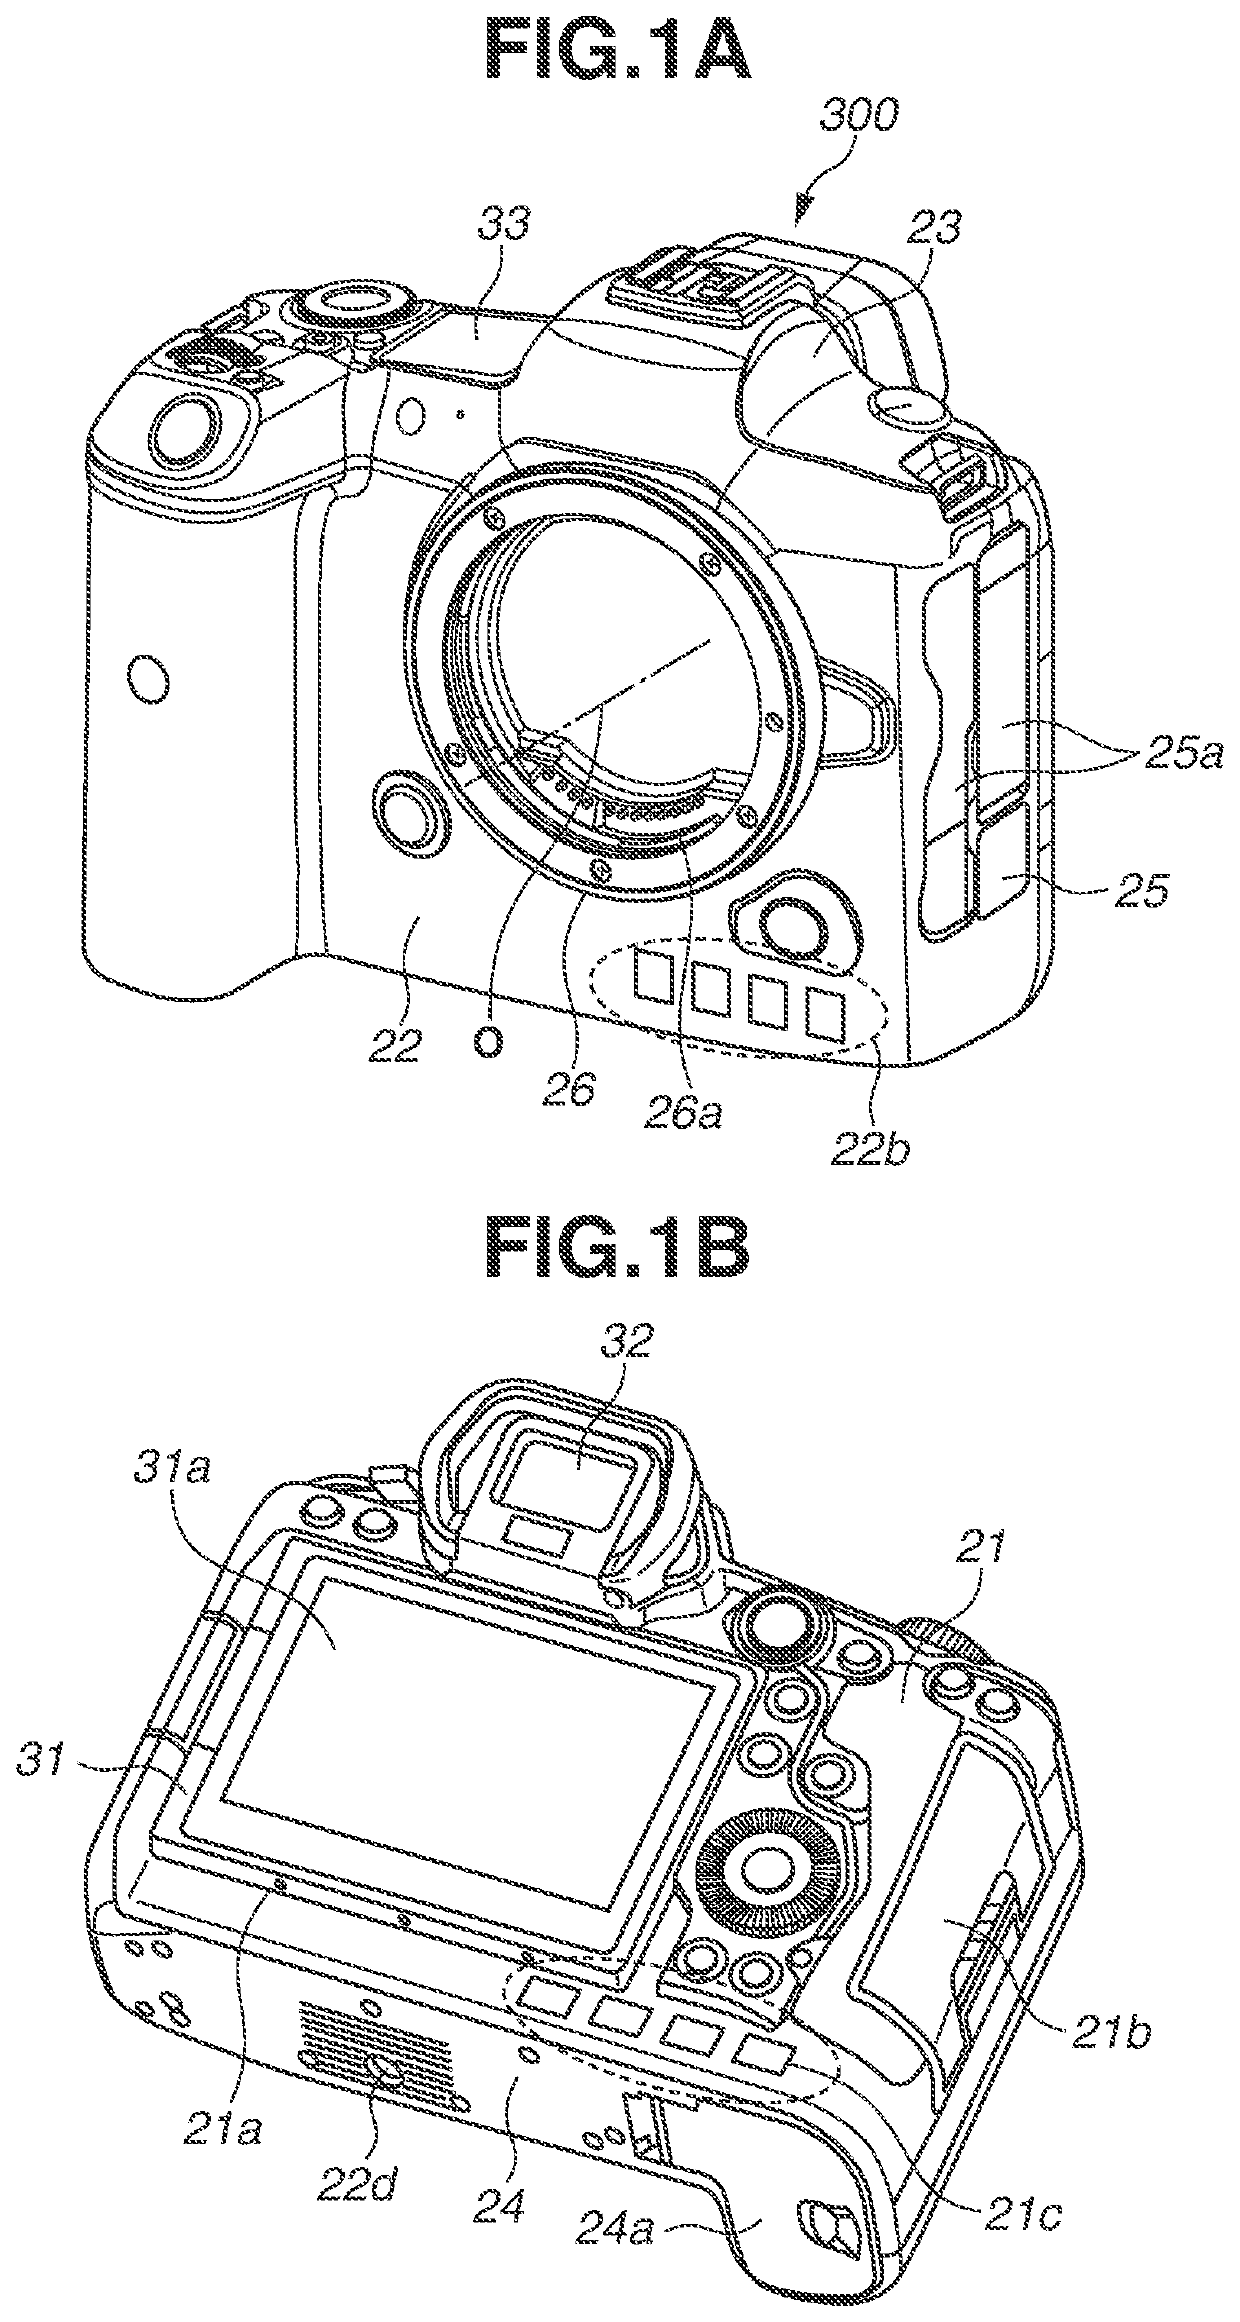 Image capturing apparatus